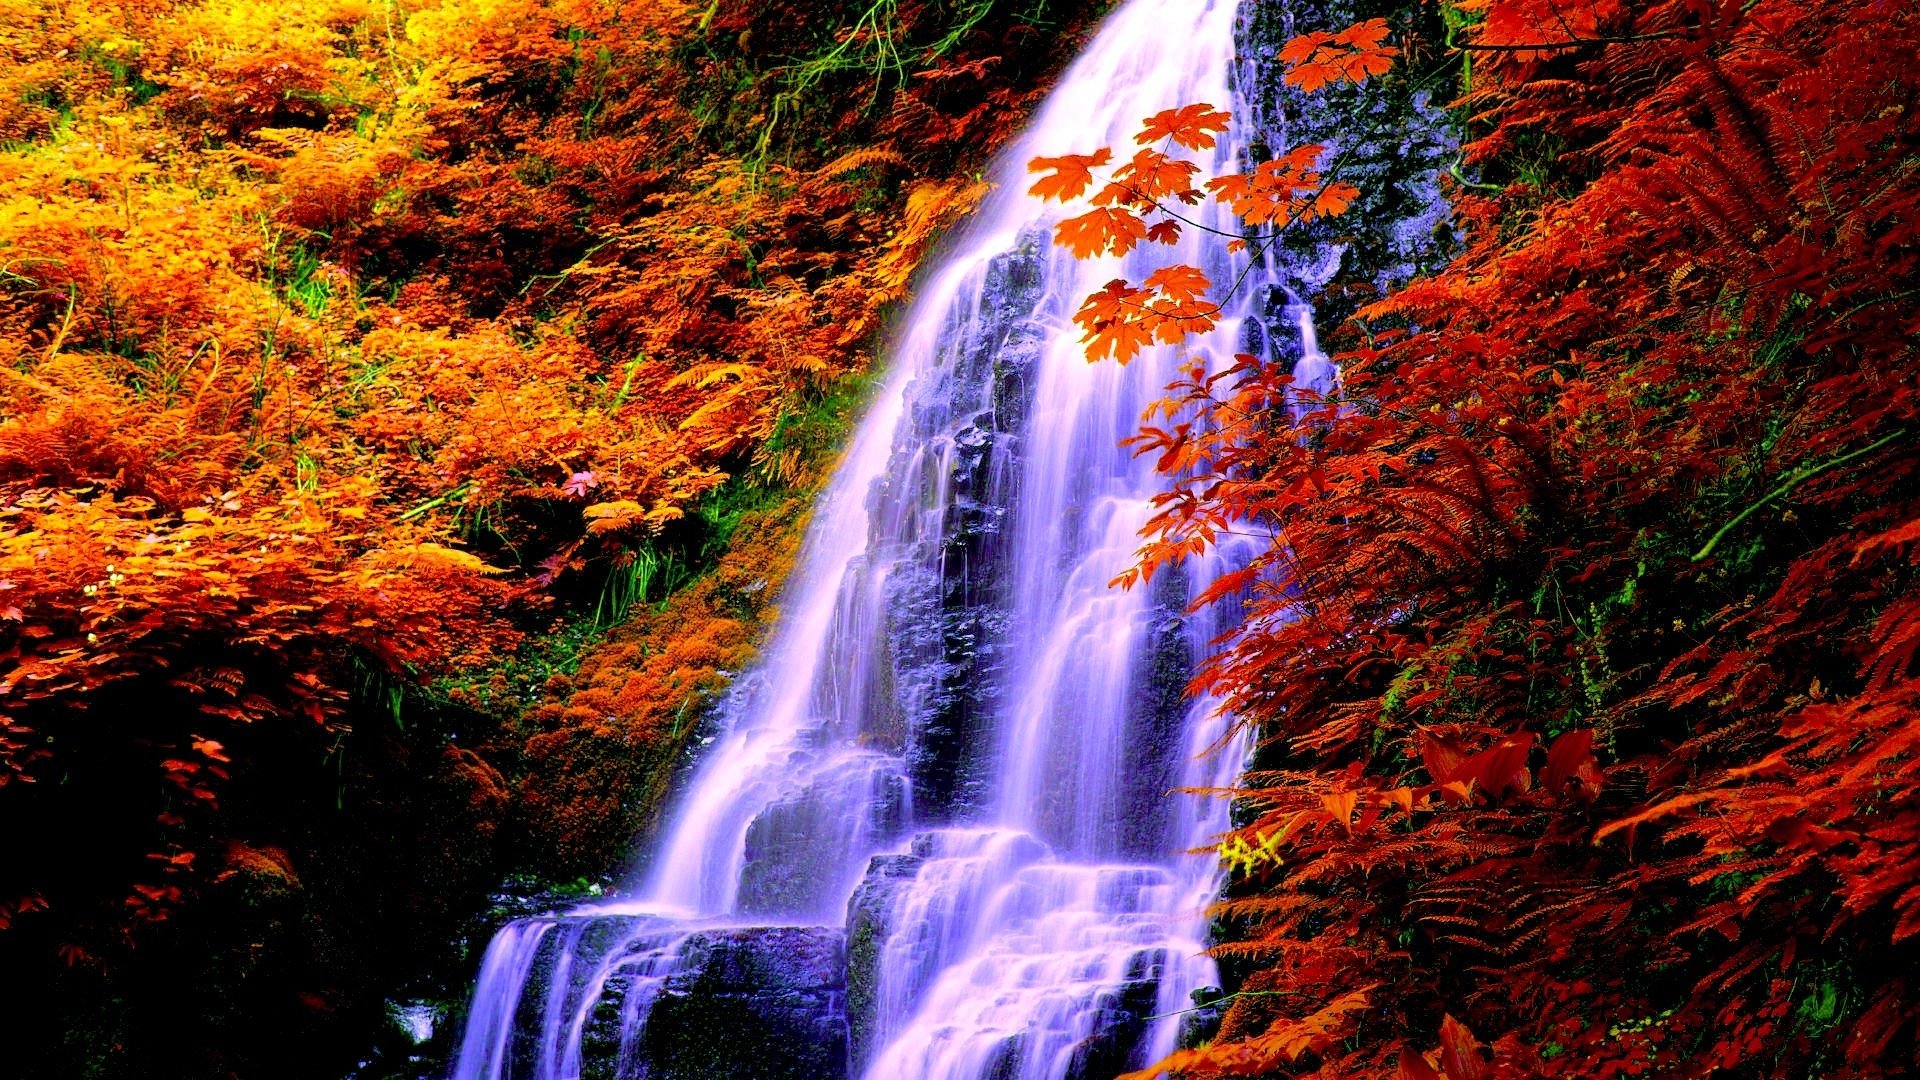 Обои на телефон живой водопад. Красивые водопады. Осенний водопад. Живая природа водопады. Красивые пейзажи с водопадами.